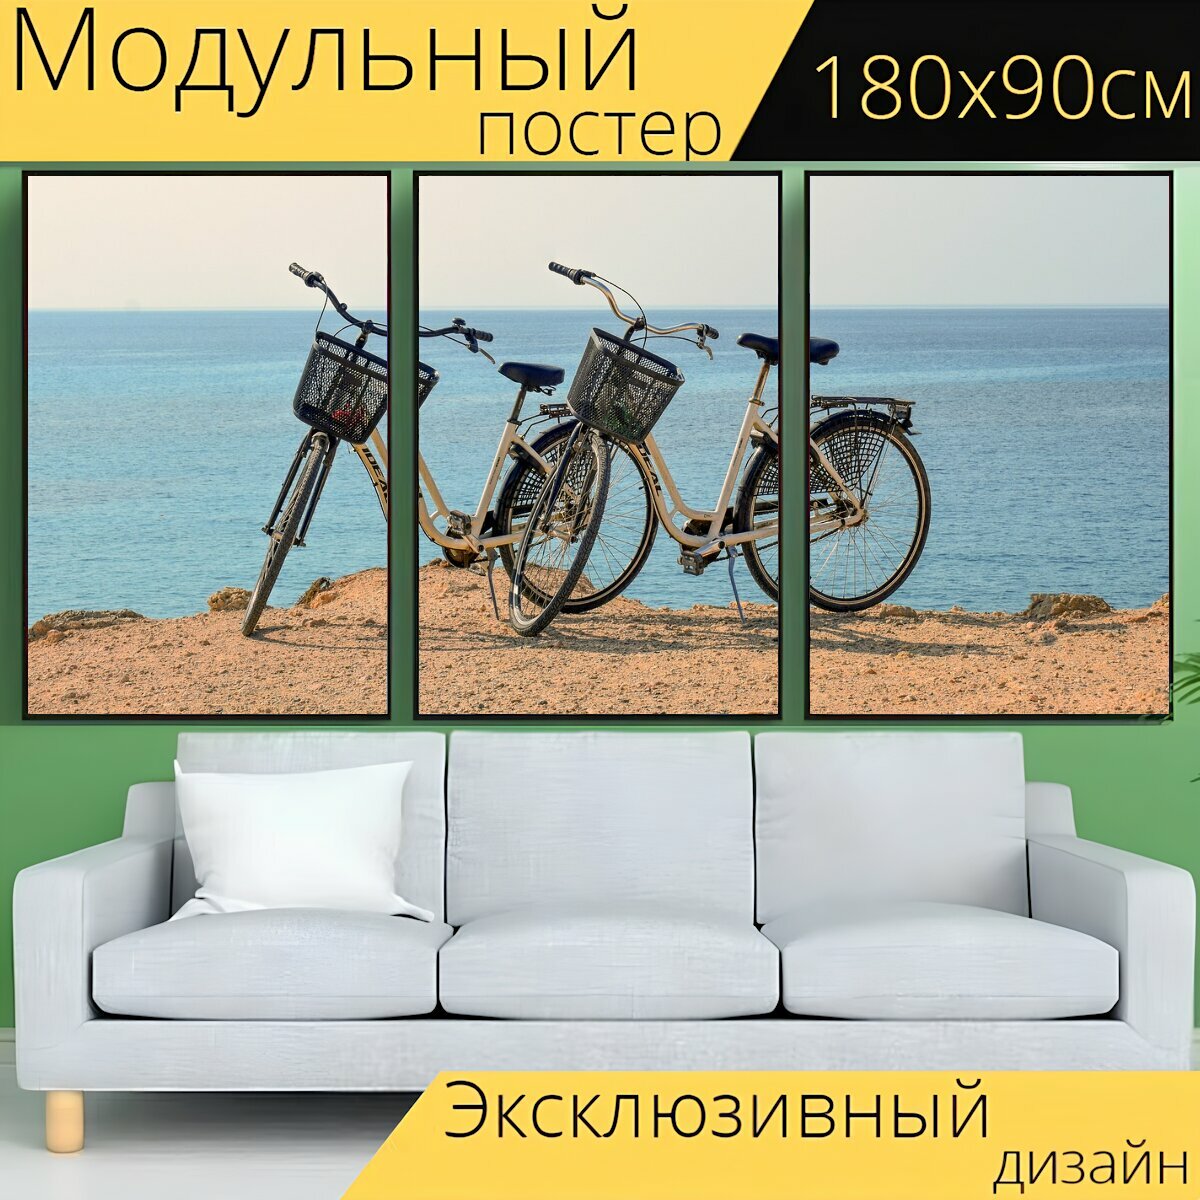 Модульный постер "Велосипед, открытый, досуг" 180 x 90 см. для интерьера